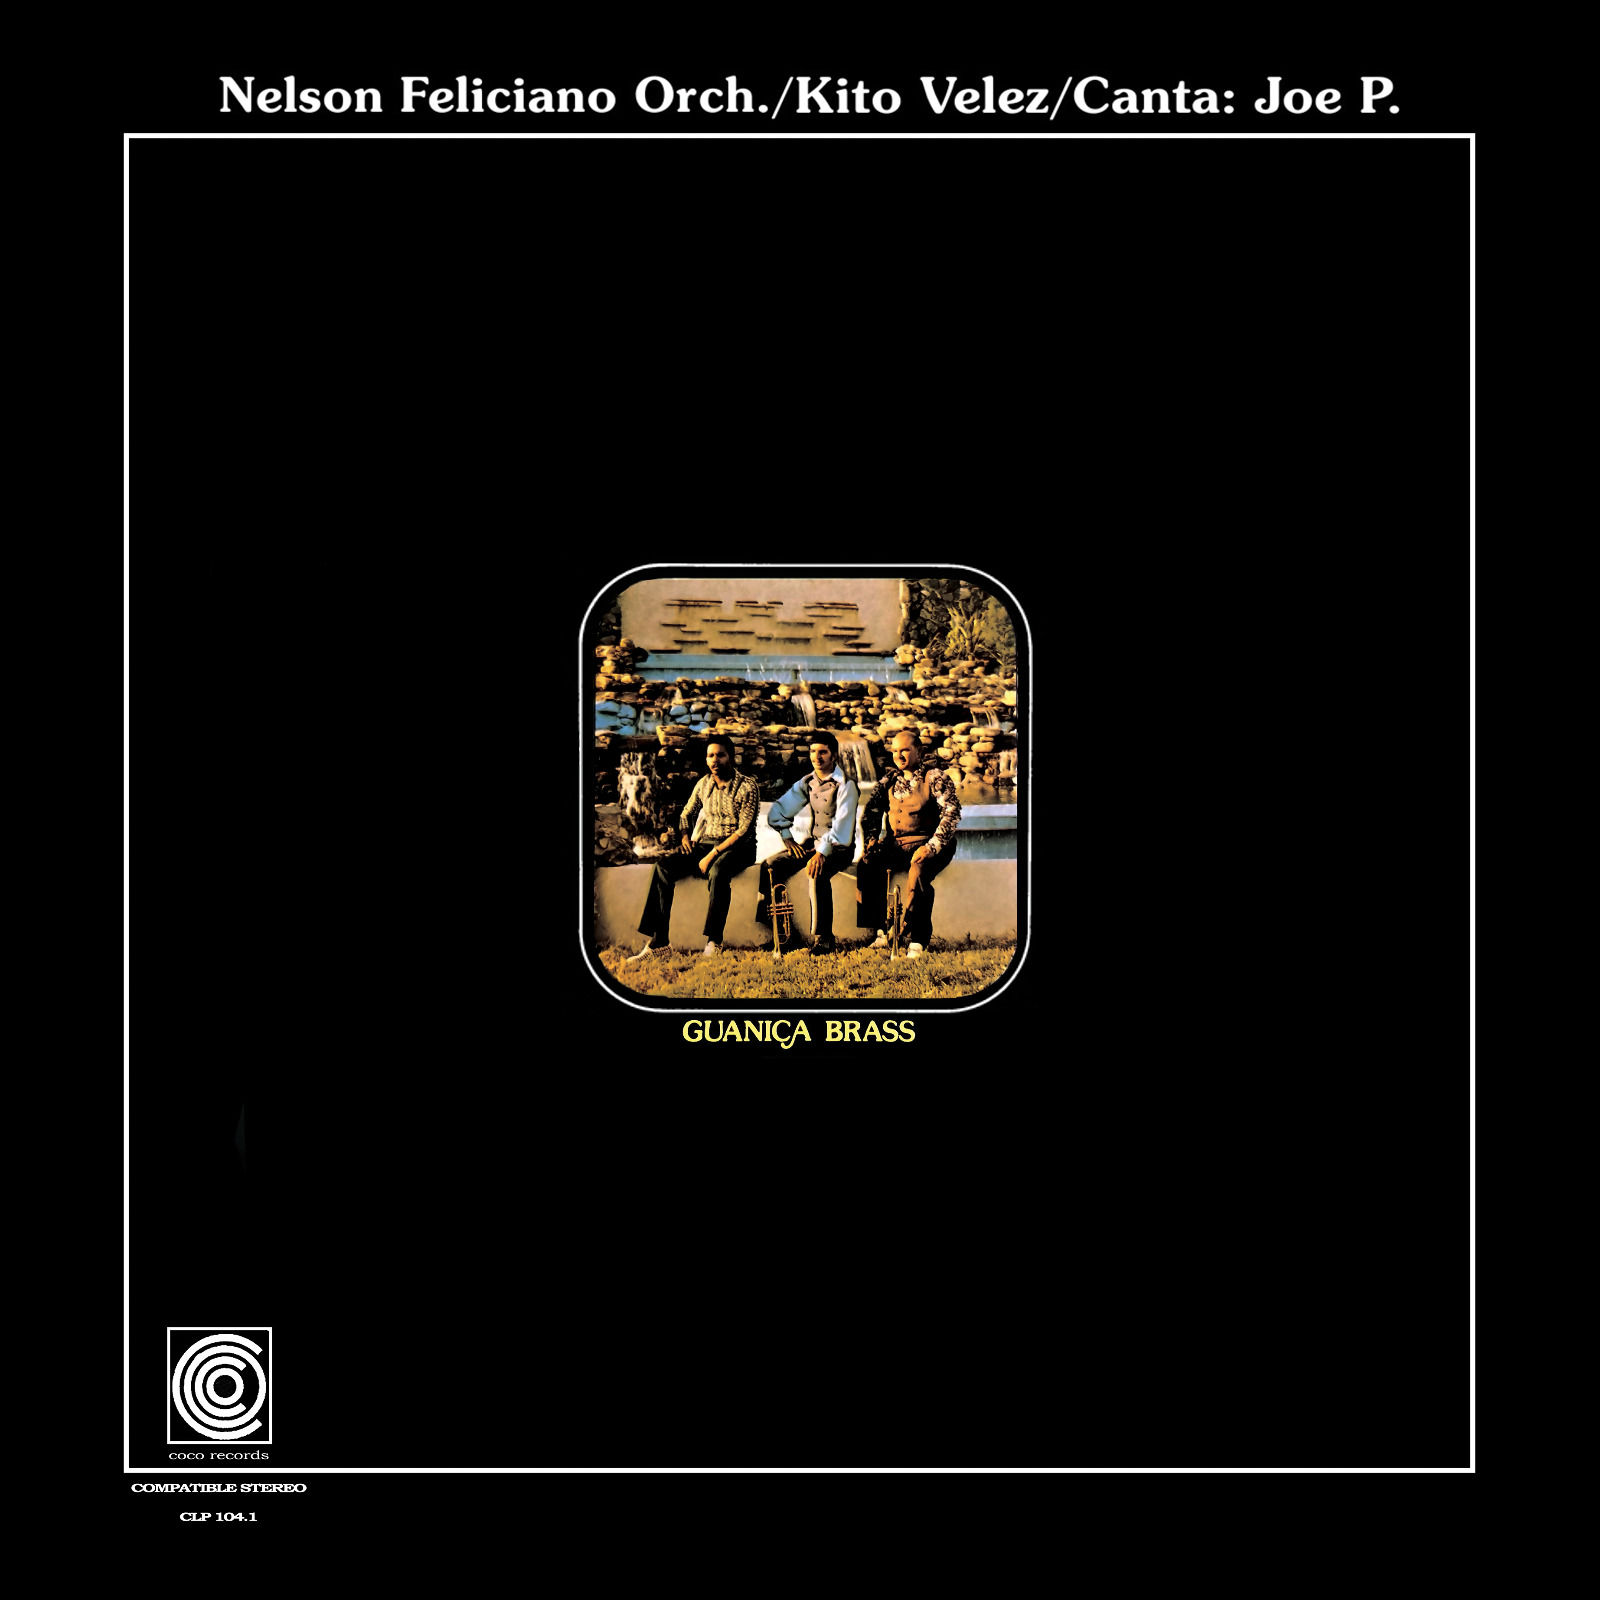 Nelson Feliciano Orch.  / Kito Velez/ Canta: Joe P. – Guanica Brass